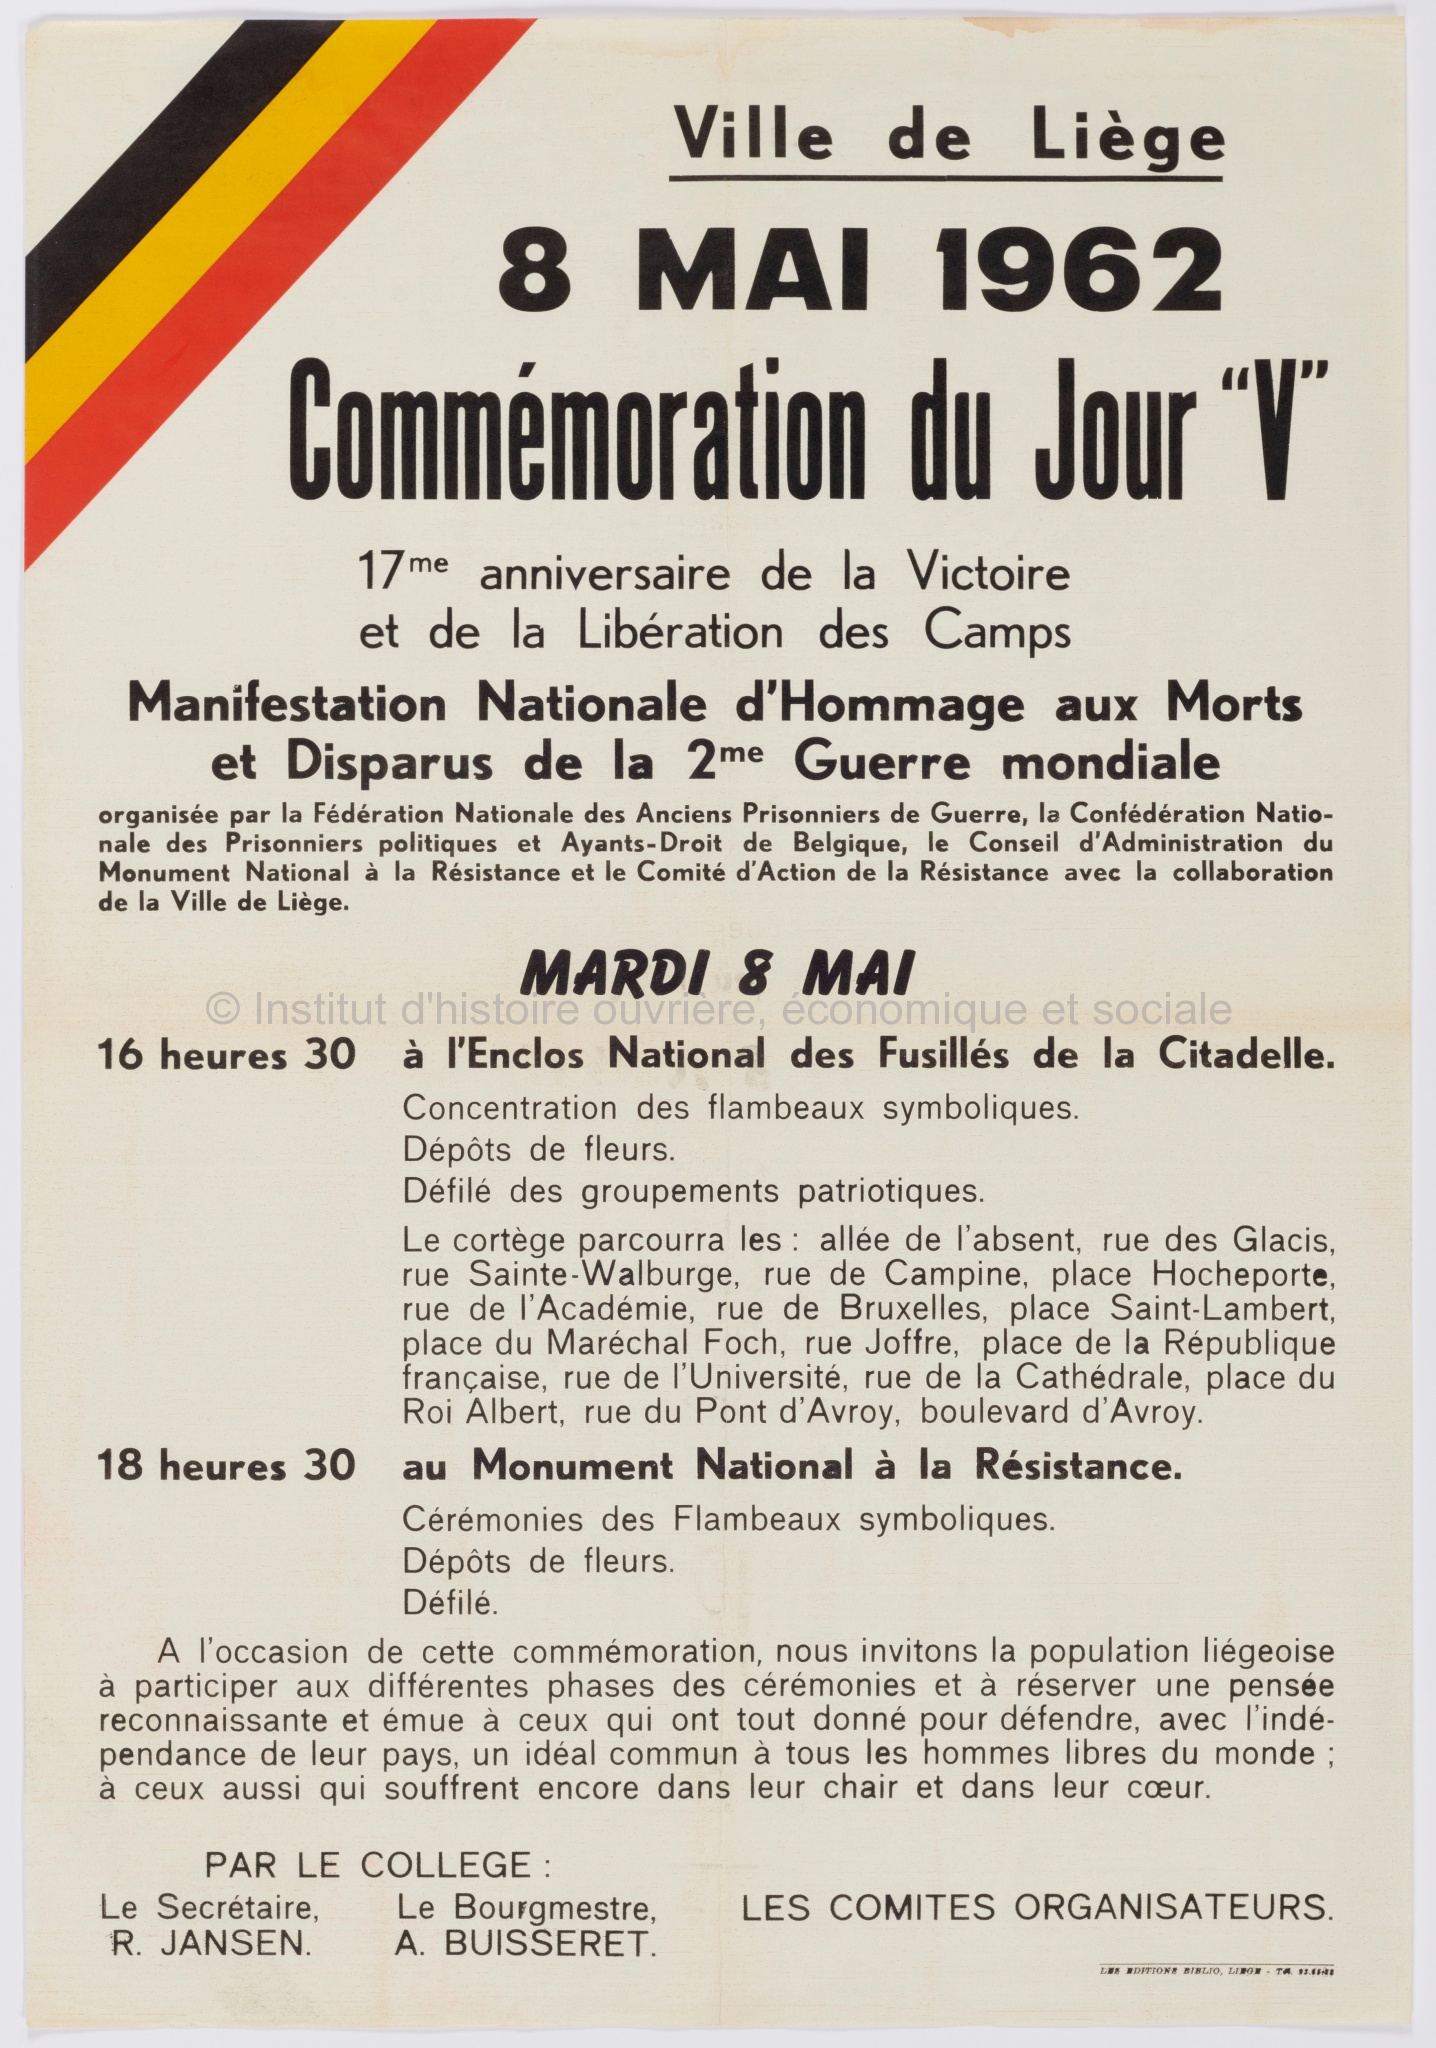 Ville de Liège, 8 mai 1962, commémoration du jour V